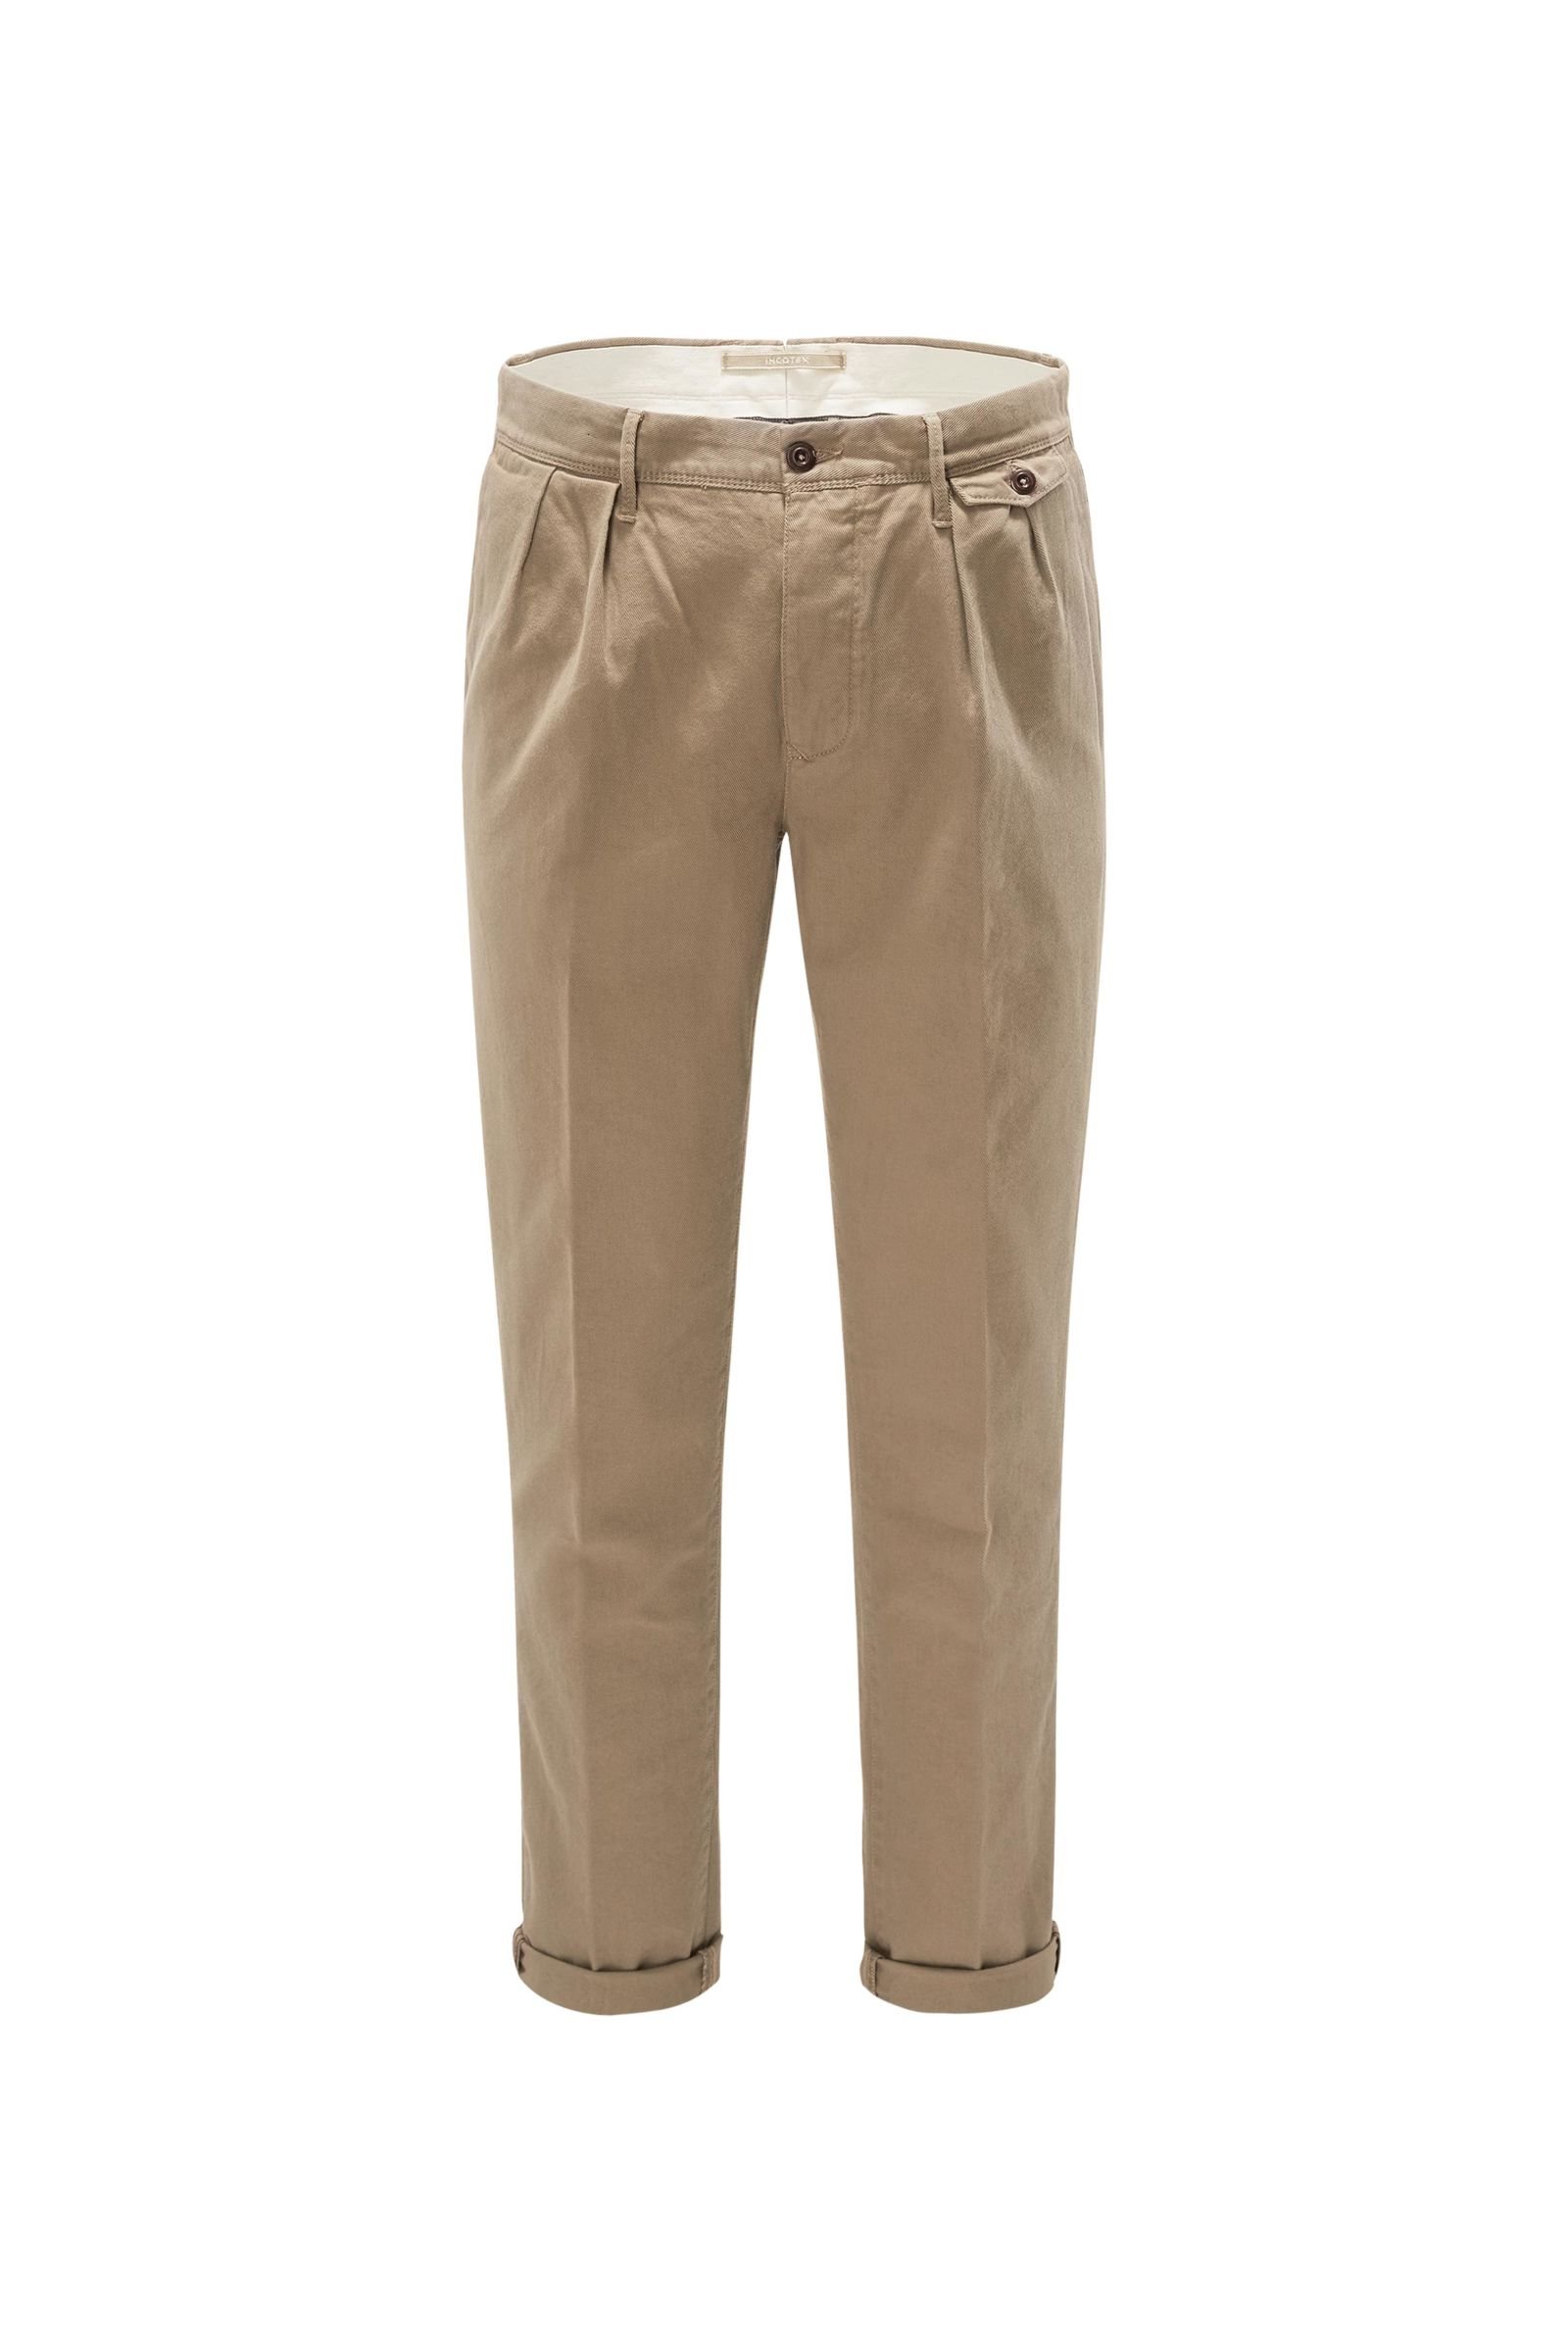 Cotton trousers 'Slacks Wide Fit' beige